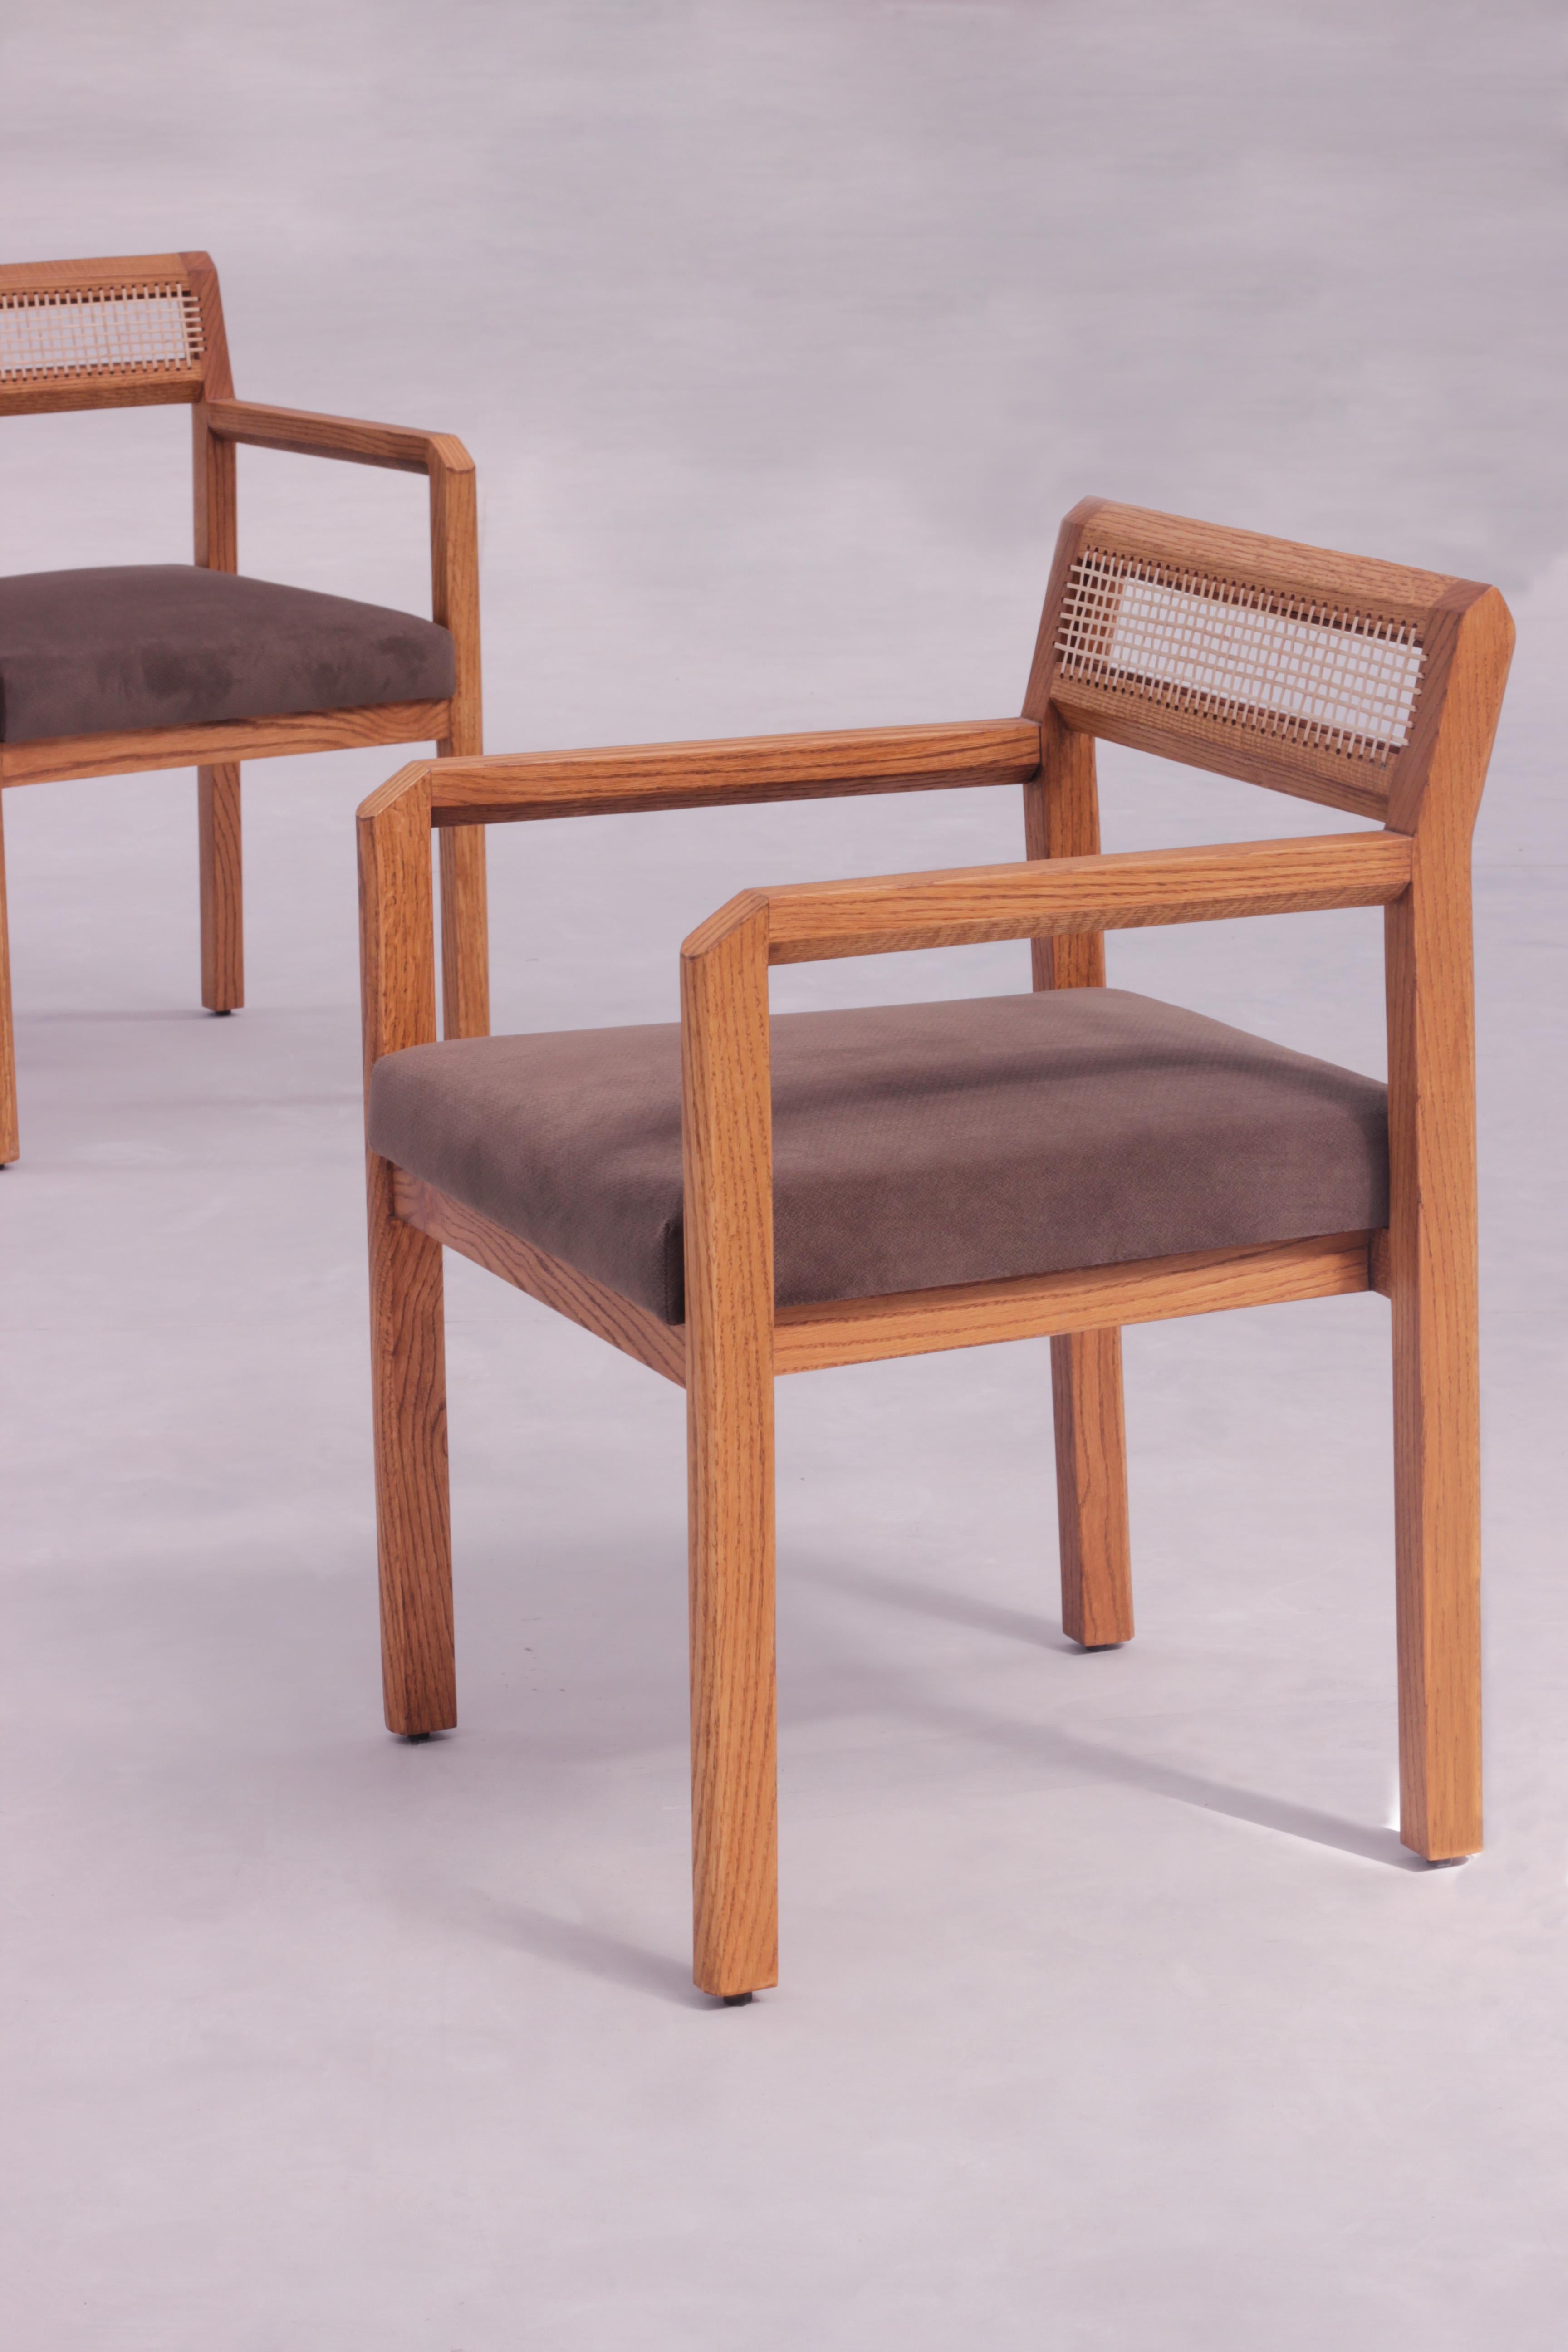 Der Jalore-Stuhl ist ein atemberaubendes Möbelstück, das sich perfekt für jedes moderne Zuhause eignet. Dieser Stuhl aus massivem Eichenholz verfügt über eine handgefertigte, fühlbare Rückenlehne mit handgeflochtenen Schilfrohrdetails, die sowohl